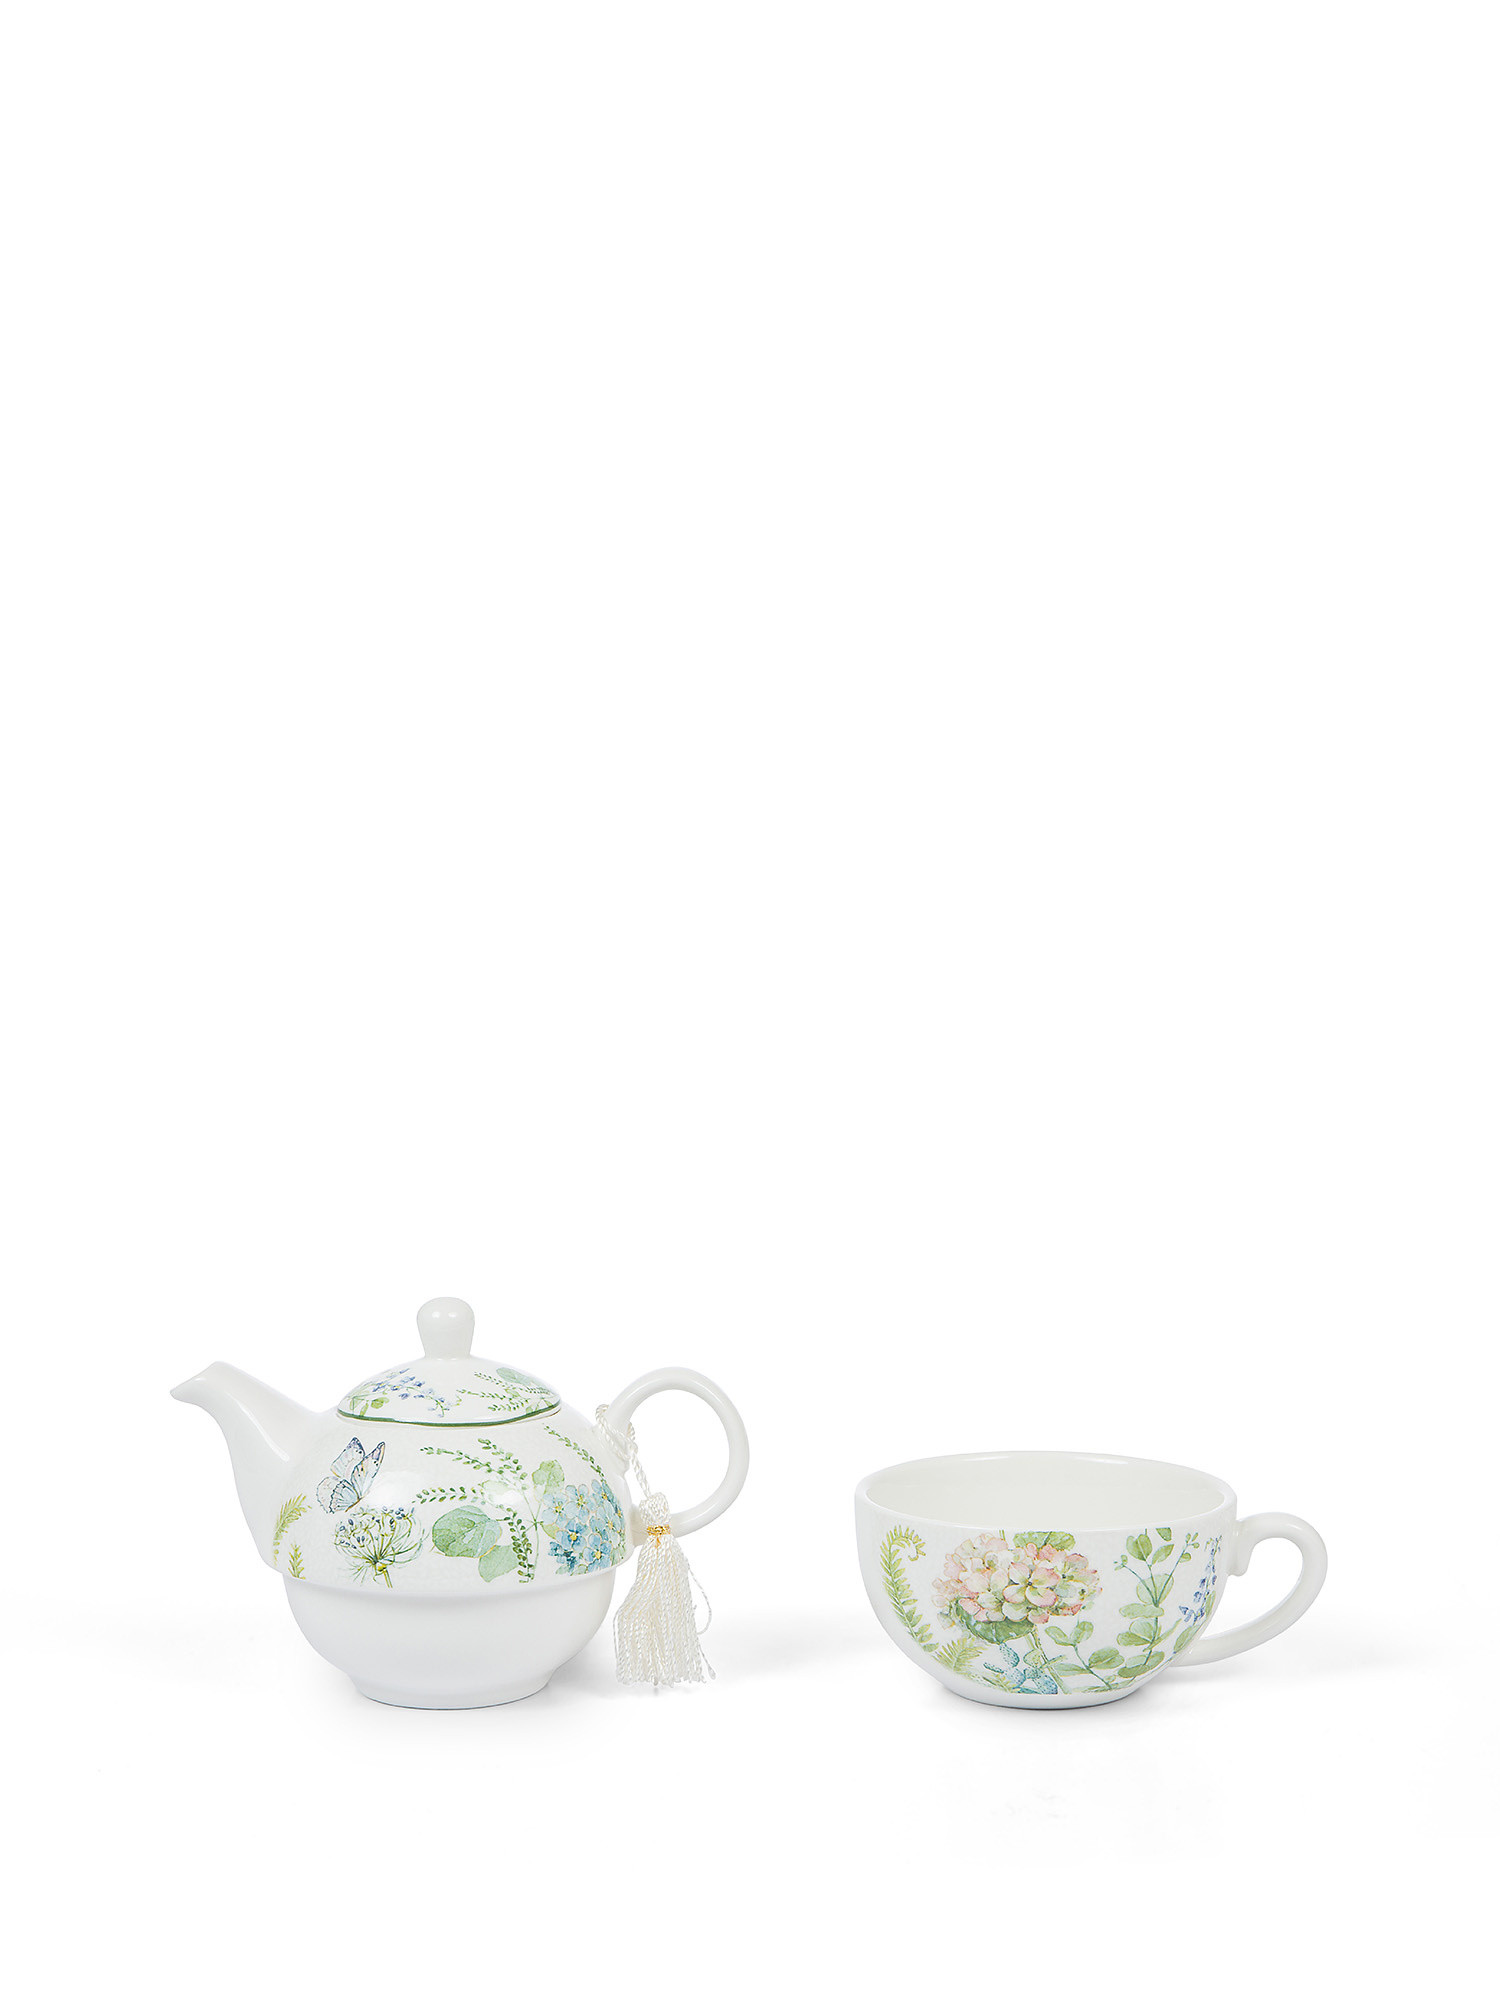 Teaforone new bone china botanical motif, Multicolor, large image number 1